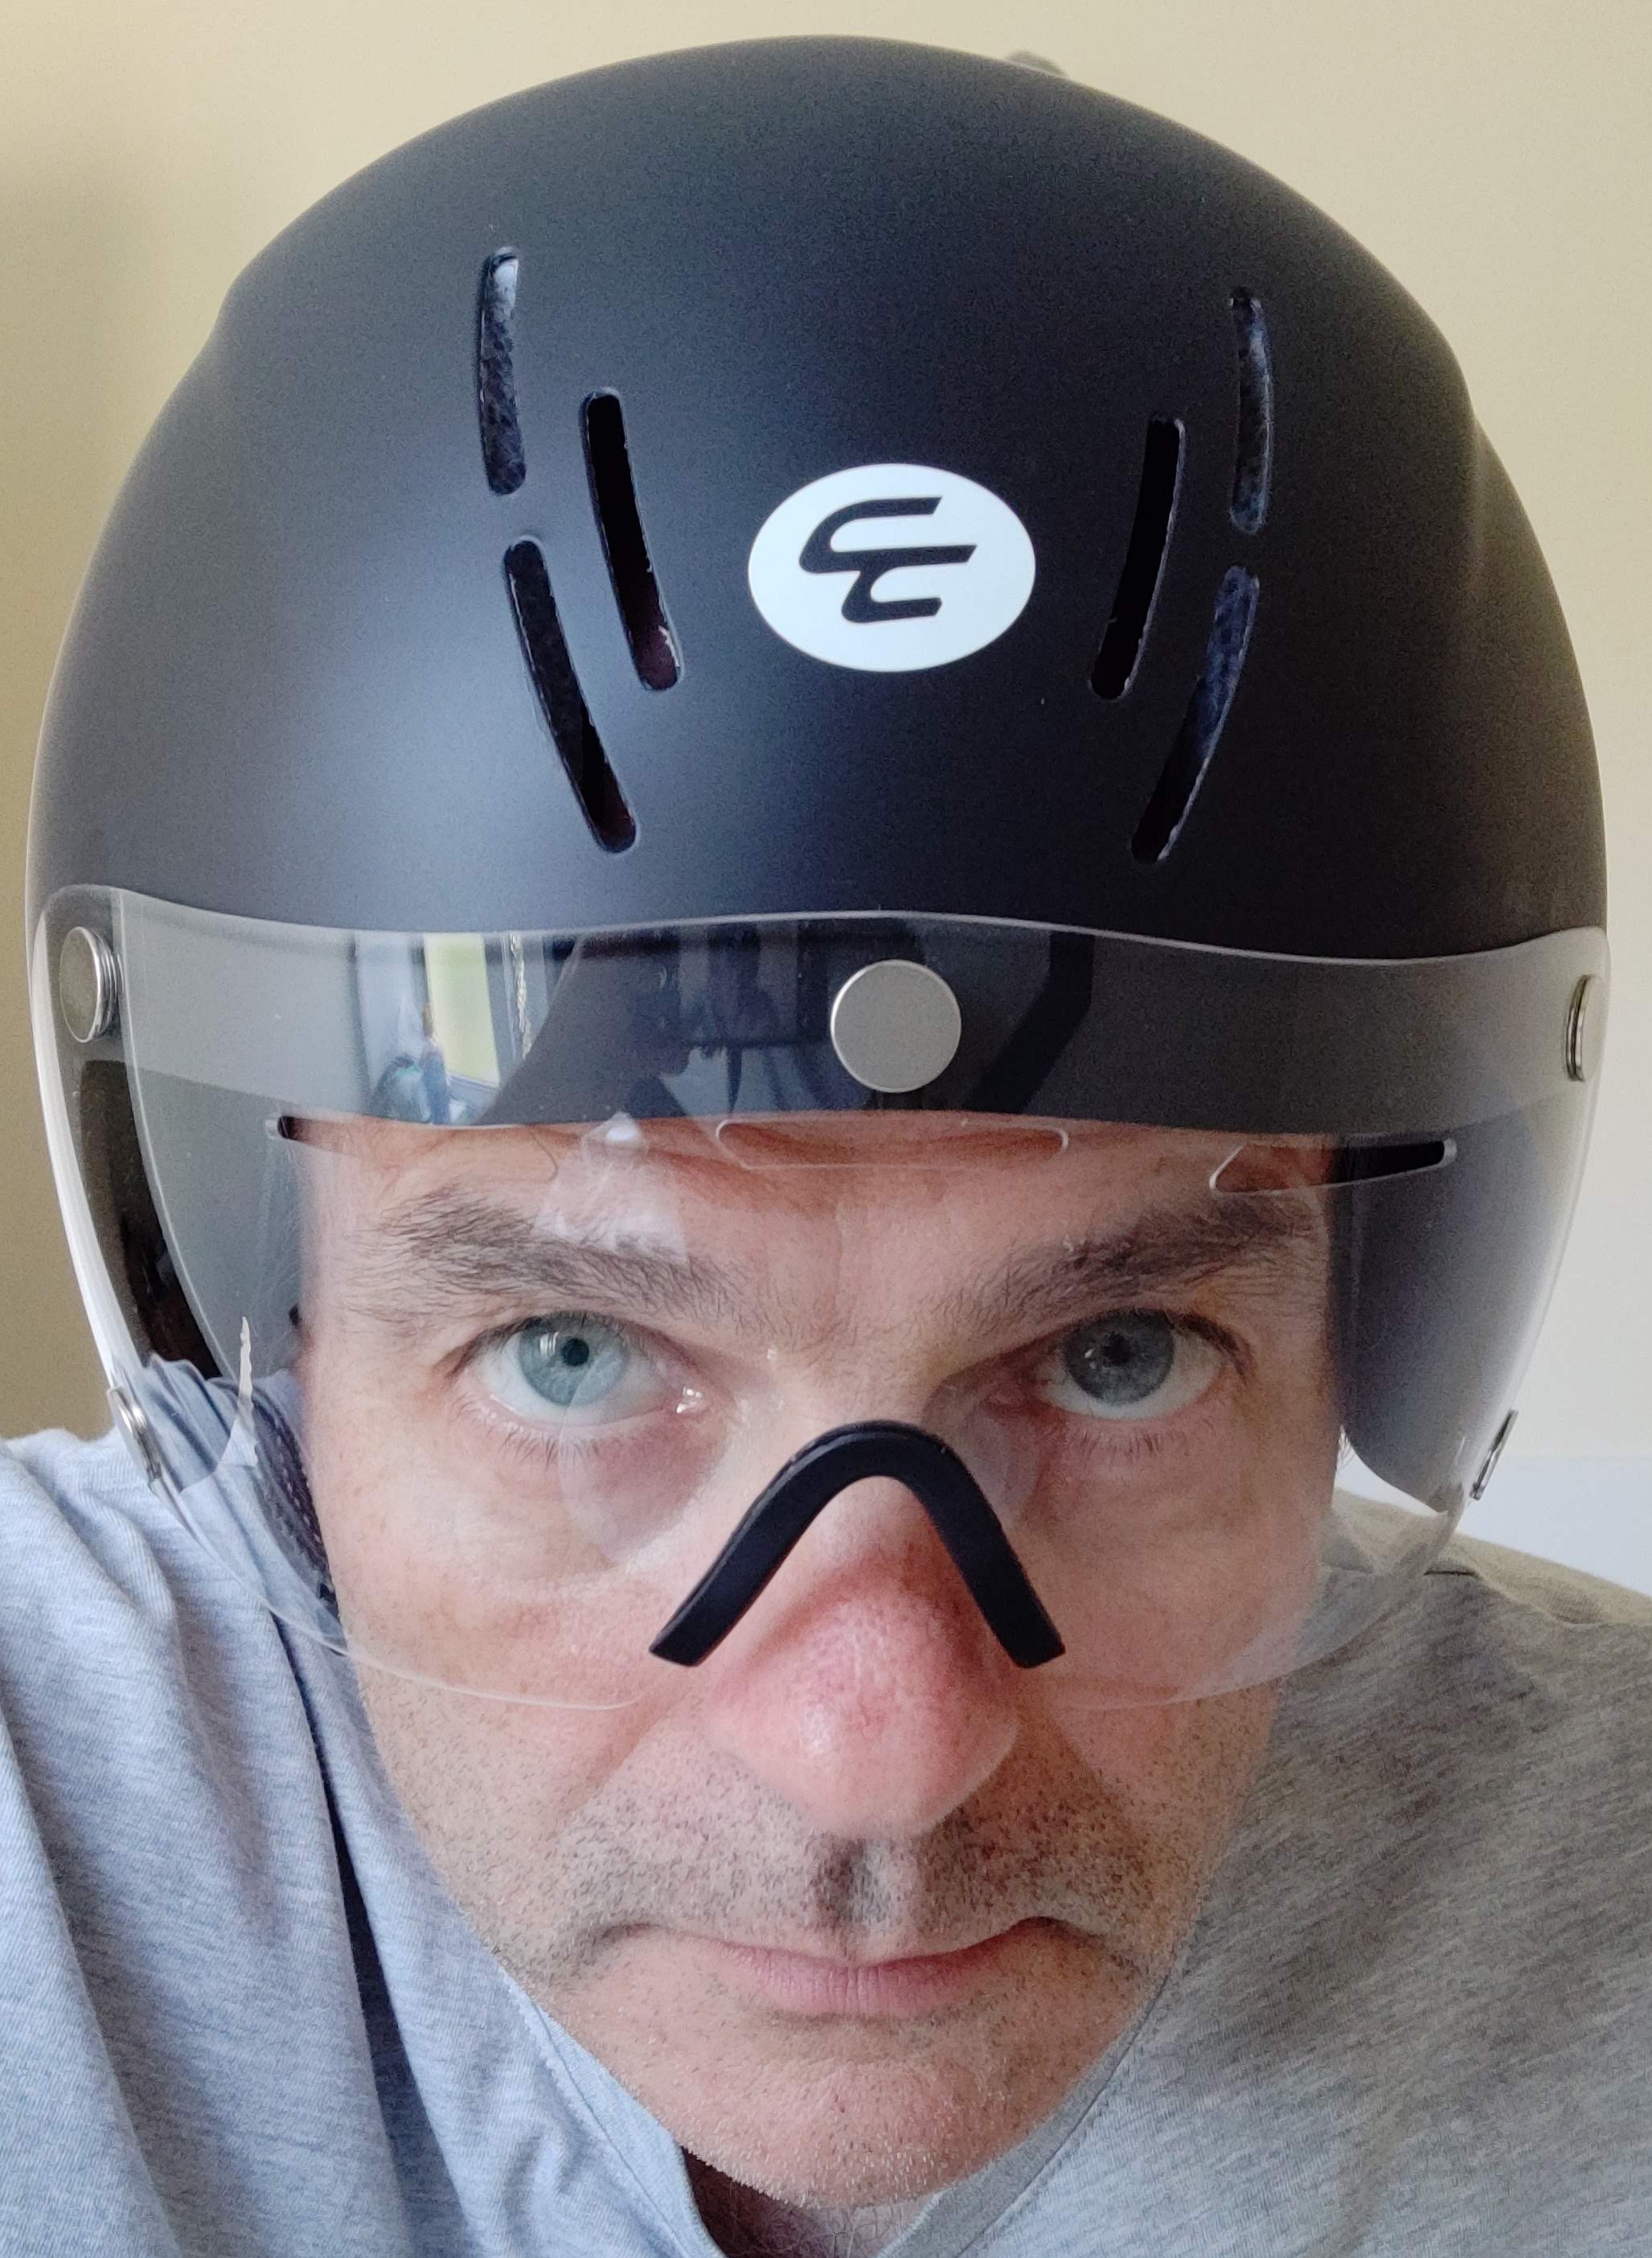 Carnac Kronus time trial helmet front view